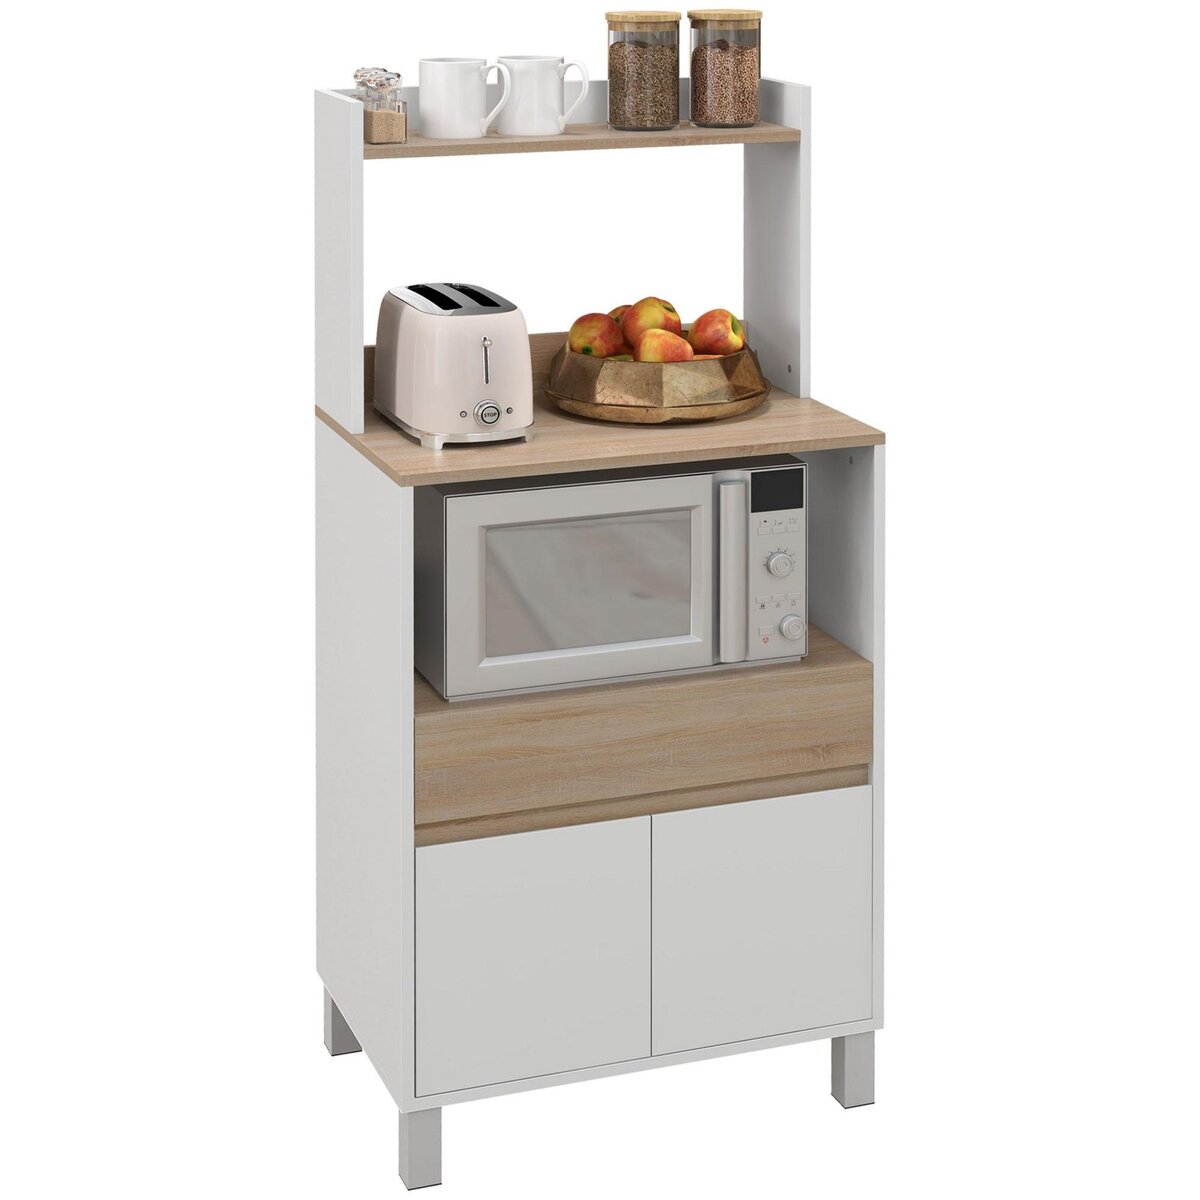 AVSTEG Étagère surélevée cuisine, blanc, 54x36 cm - IKEA